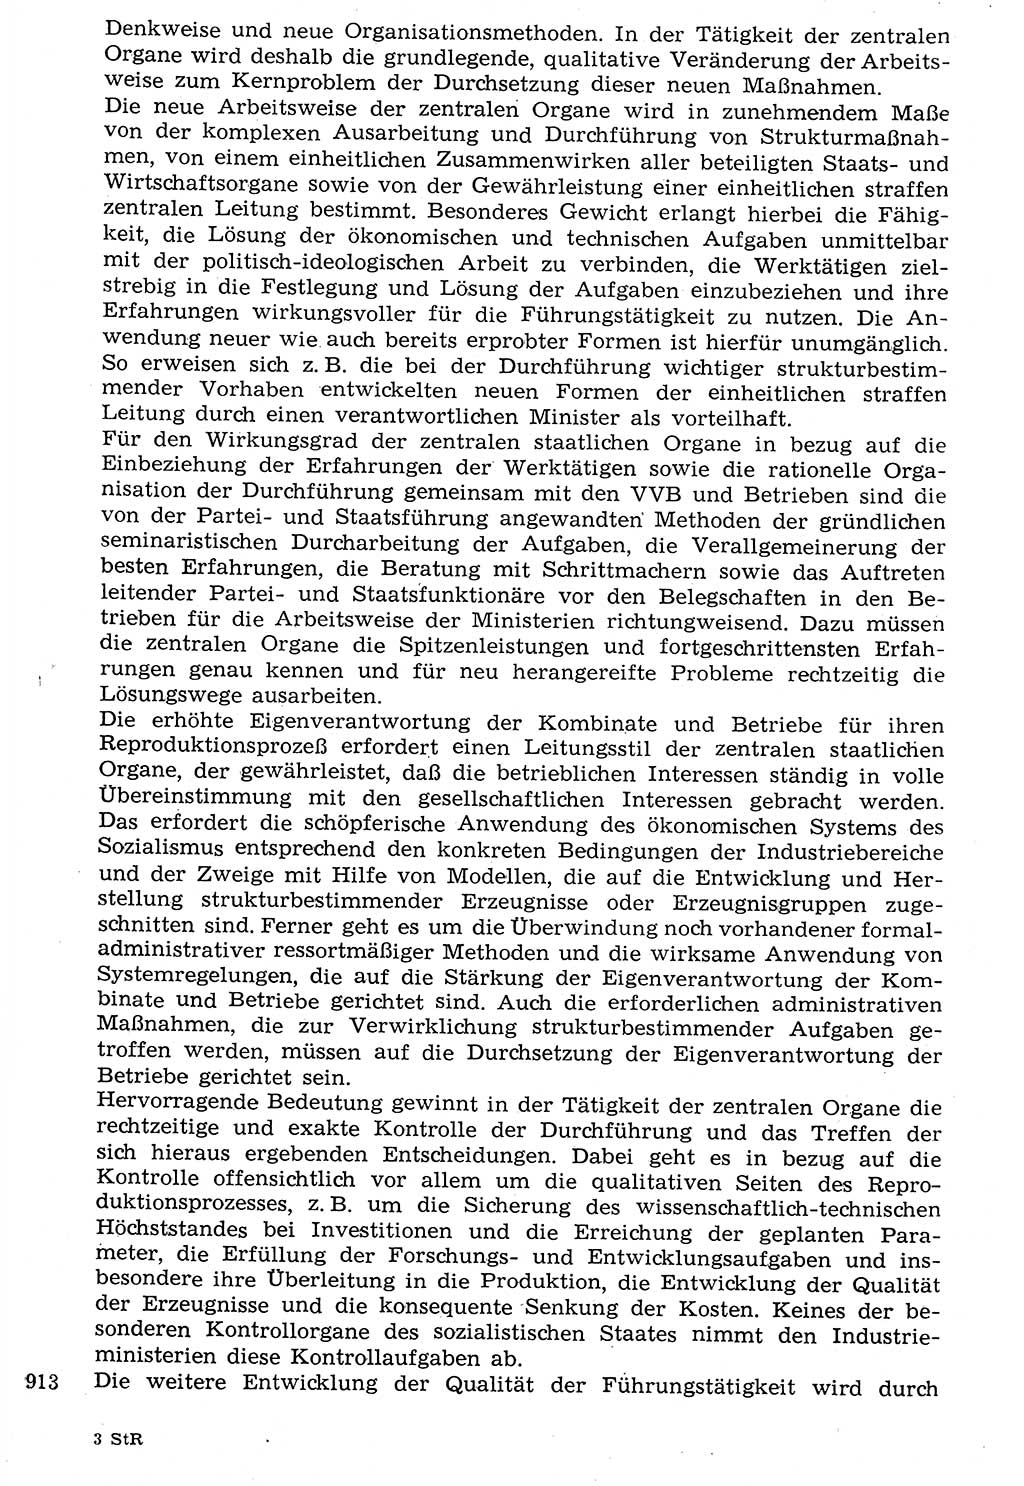 Staat und Recht (StuR), 17. Jahrgang [Deutsche Demokratische Republik (DDR)] 1968, Seite 913 (StuR DDR 1968, S. 913)